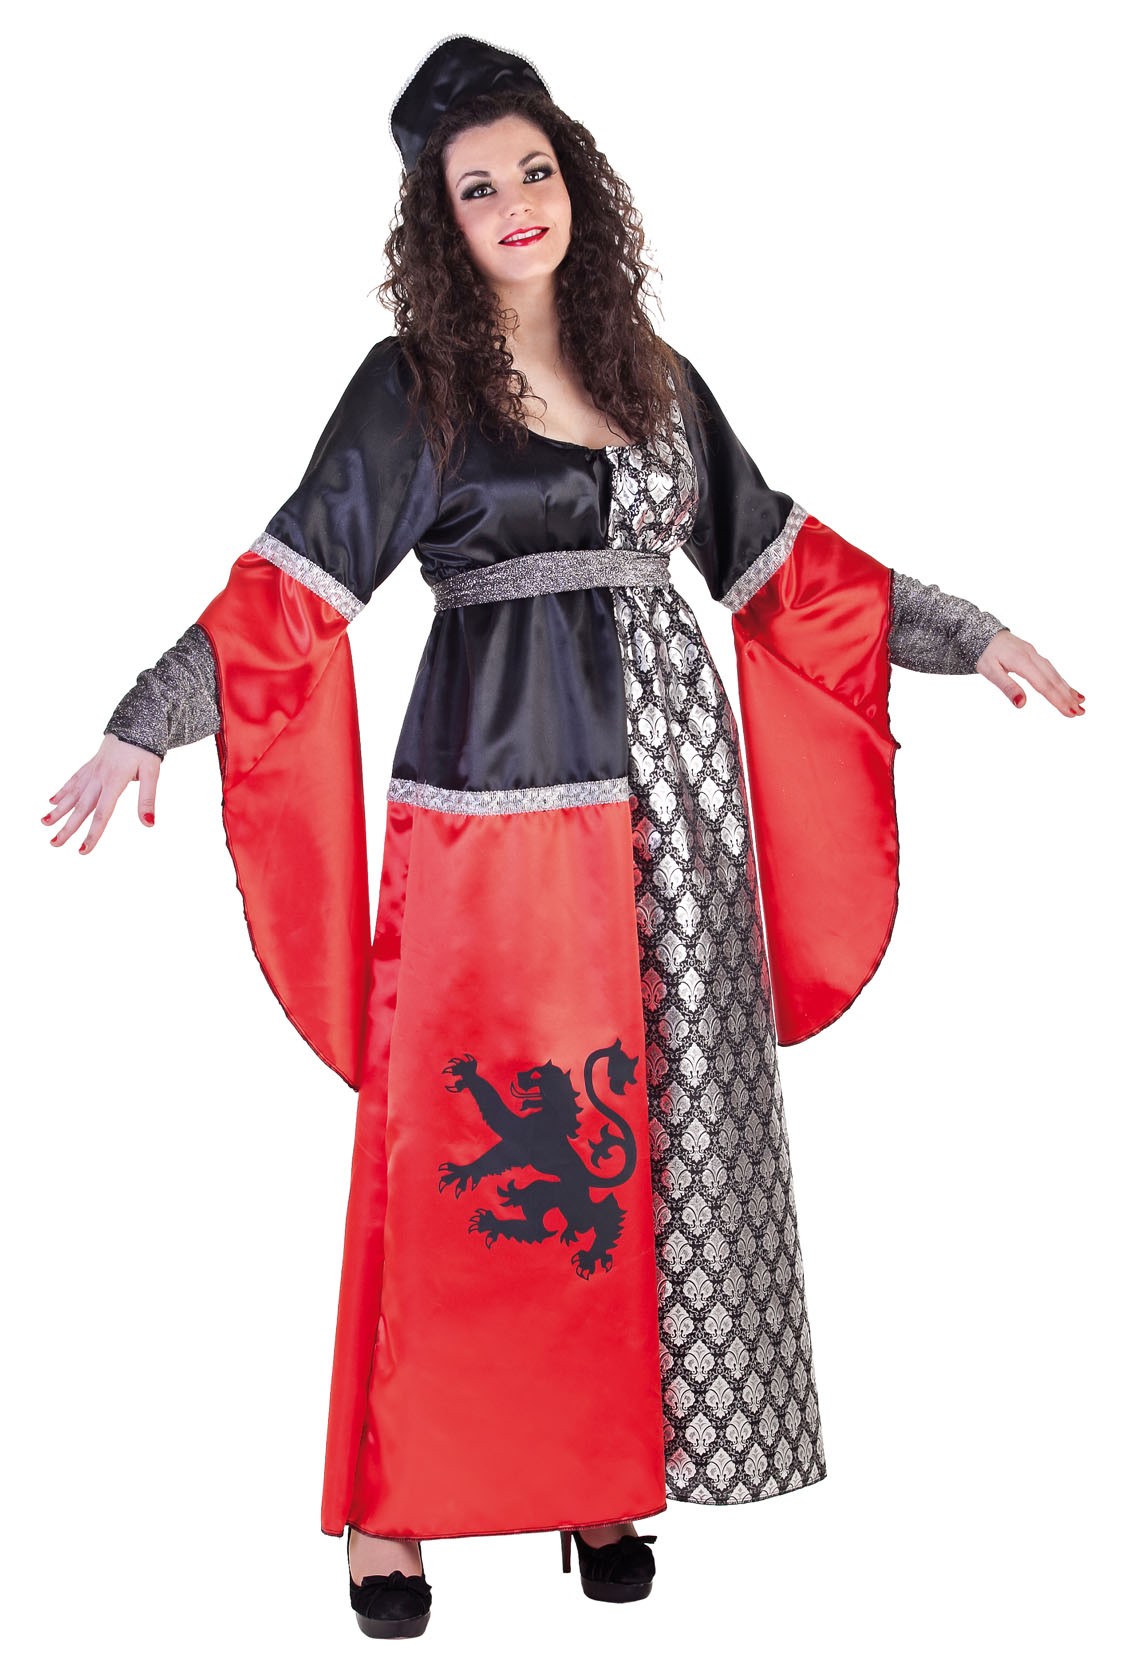 Disfraz de reina de león para mujer medieval traje rojo vestido para mujer